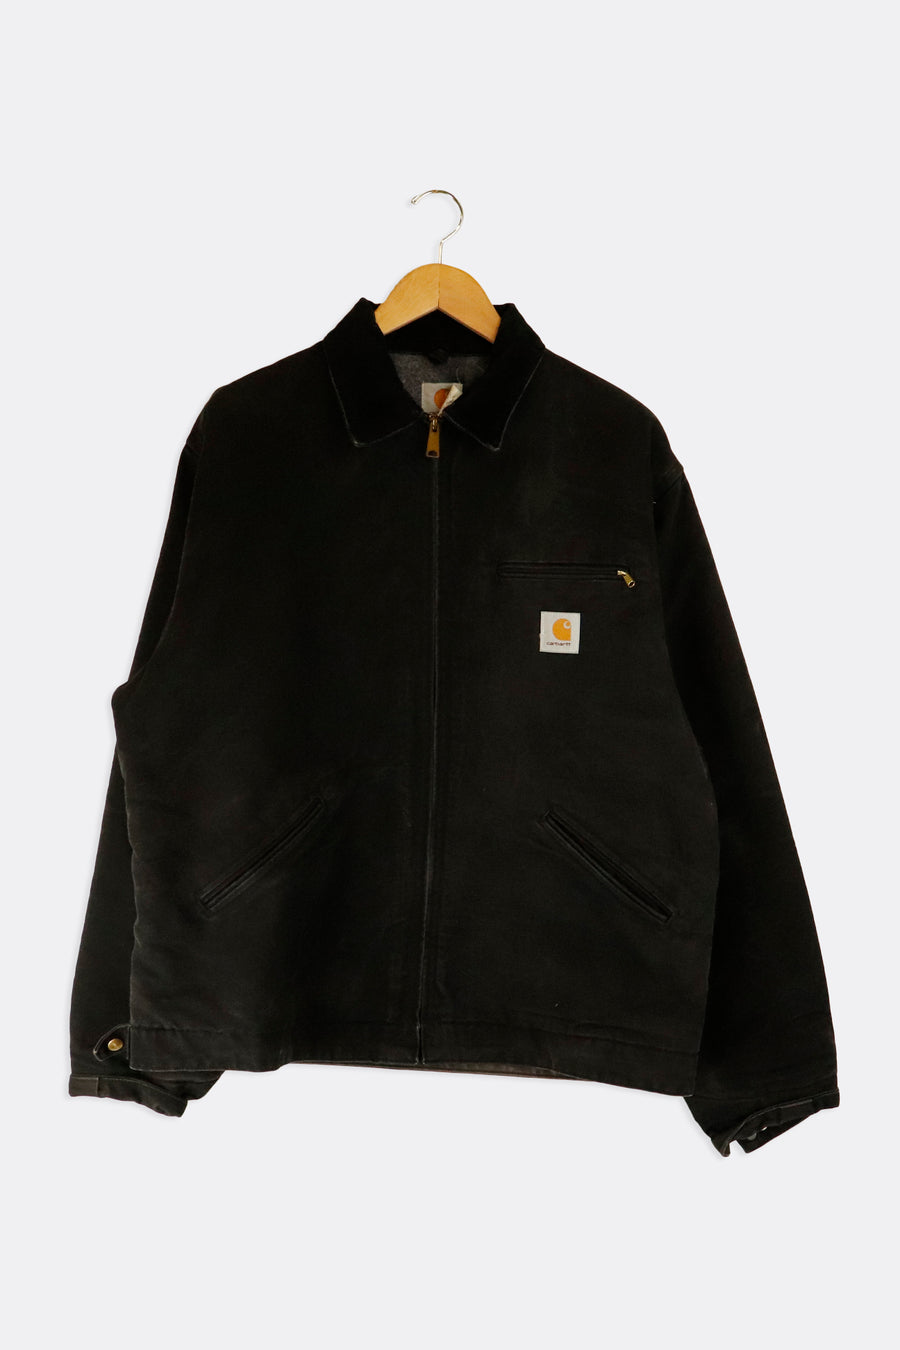 Vintage 1997 Detroit Carhartt Blanket Lines Full Zip Corduroy Collar Jacket Sz 2XL